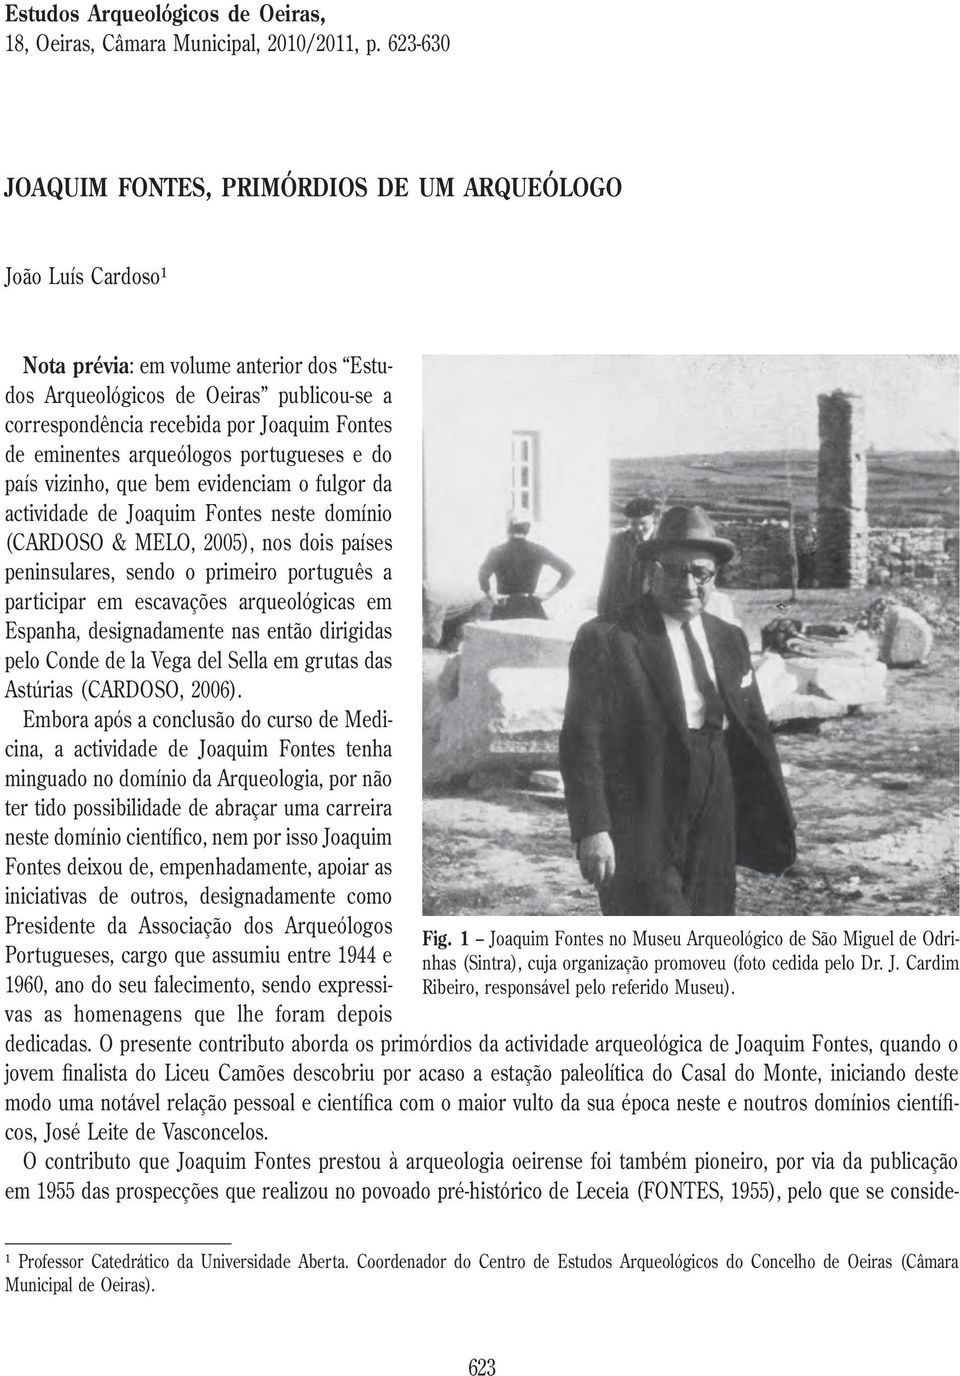 eminentes arqueólogos portugueses e do país vizinho, que bem evidenciam o fulgor da actividade de Joaquim Fontes neste domínio (CARDOSO & MELO, 2005), nos dois países peninsulares, sendo o primeiro